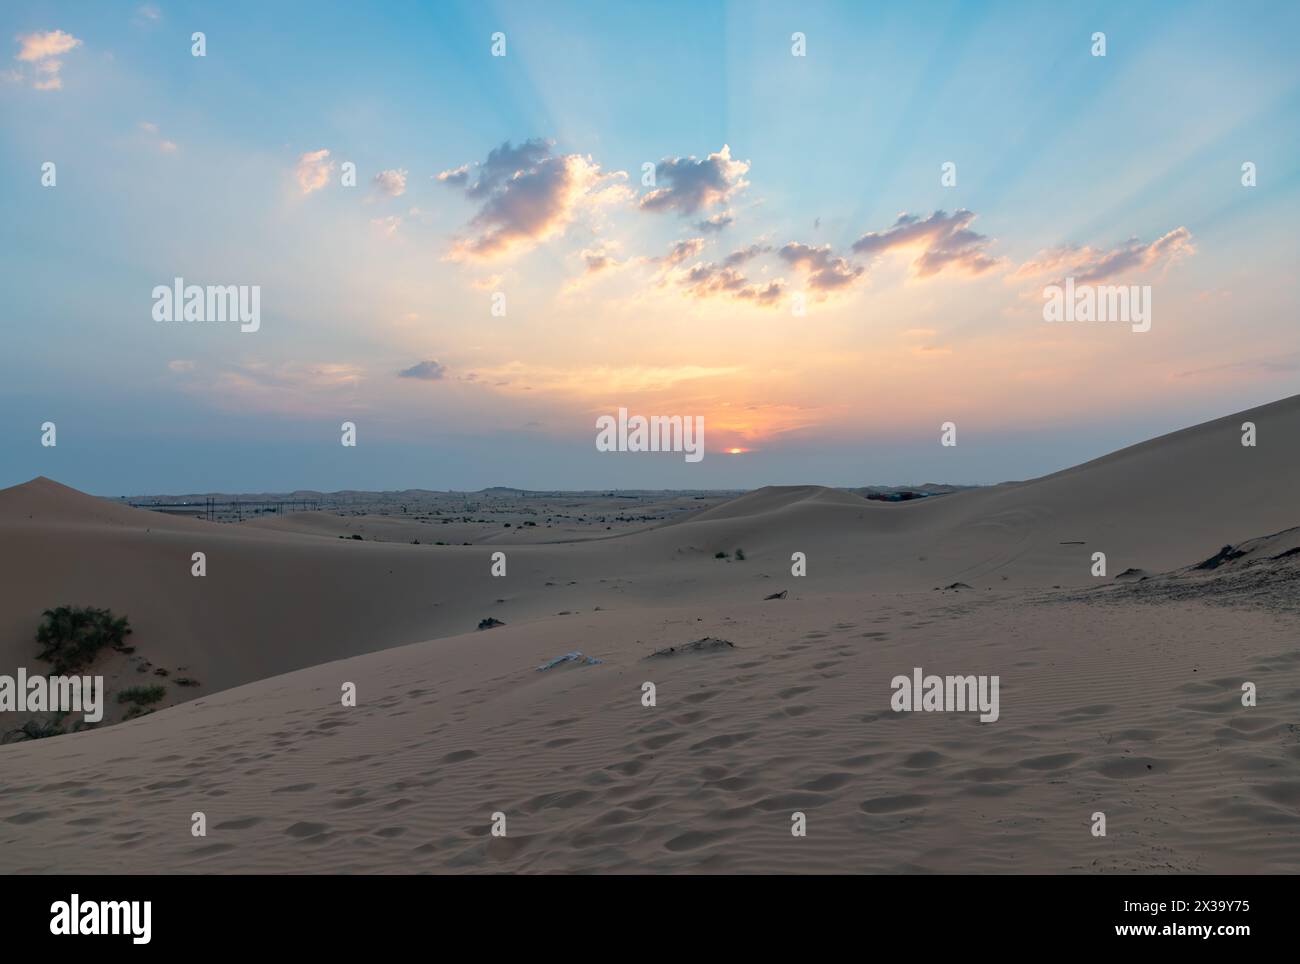 Ein Bild der Wüstenlandschaft außerhalb von Abu Dhabi bei Sonnenuntergang. Stockfoto